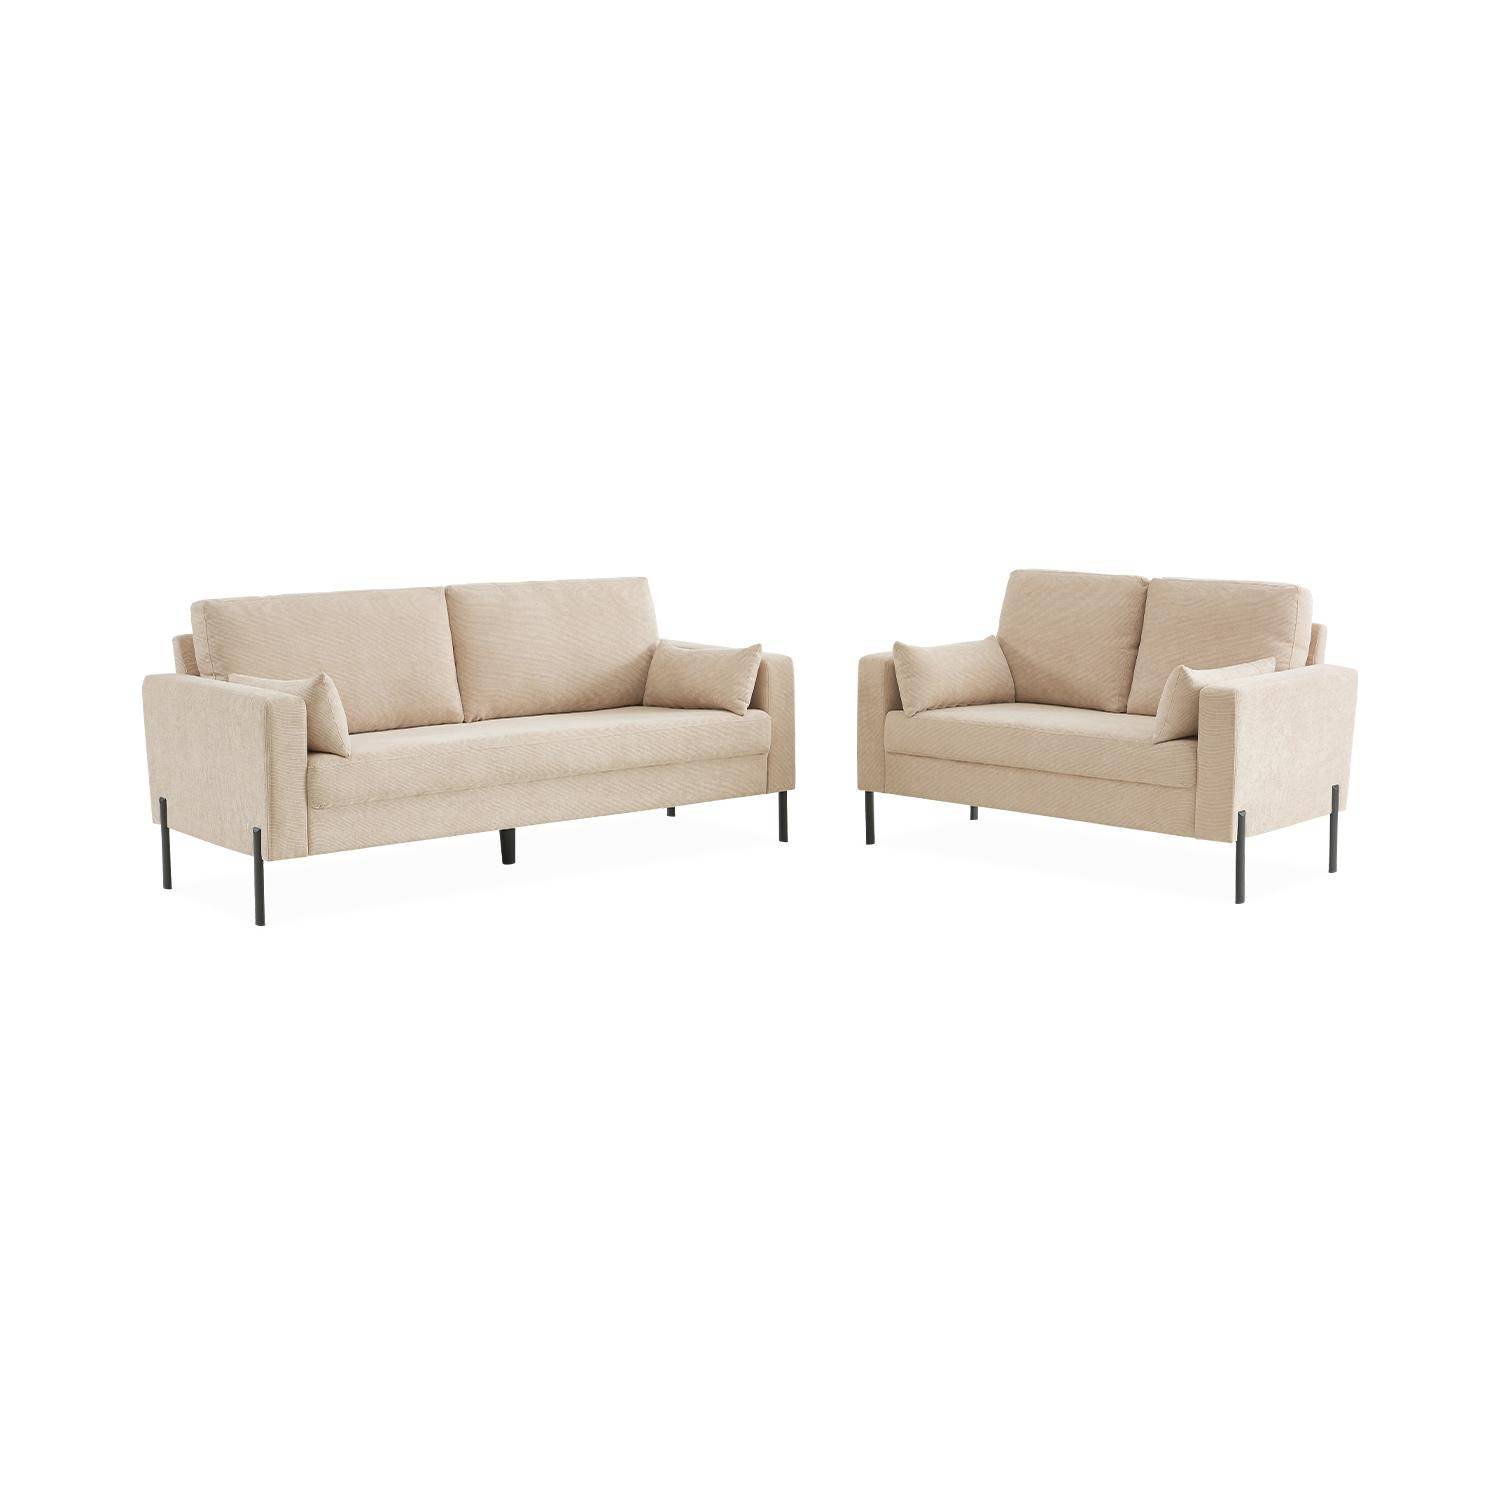 Large 3-seater living room sofa - Beige Corduroy, industrial-style metal legs - Bjorn - Beige Photo6